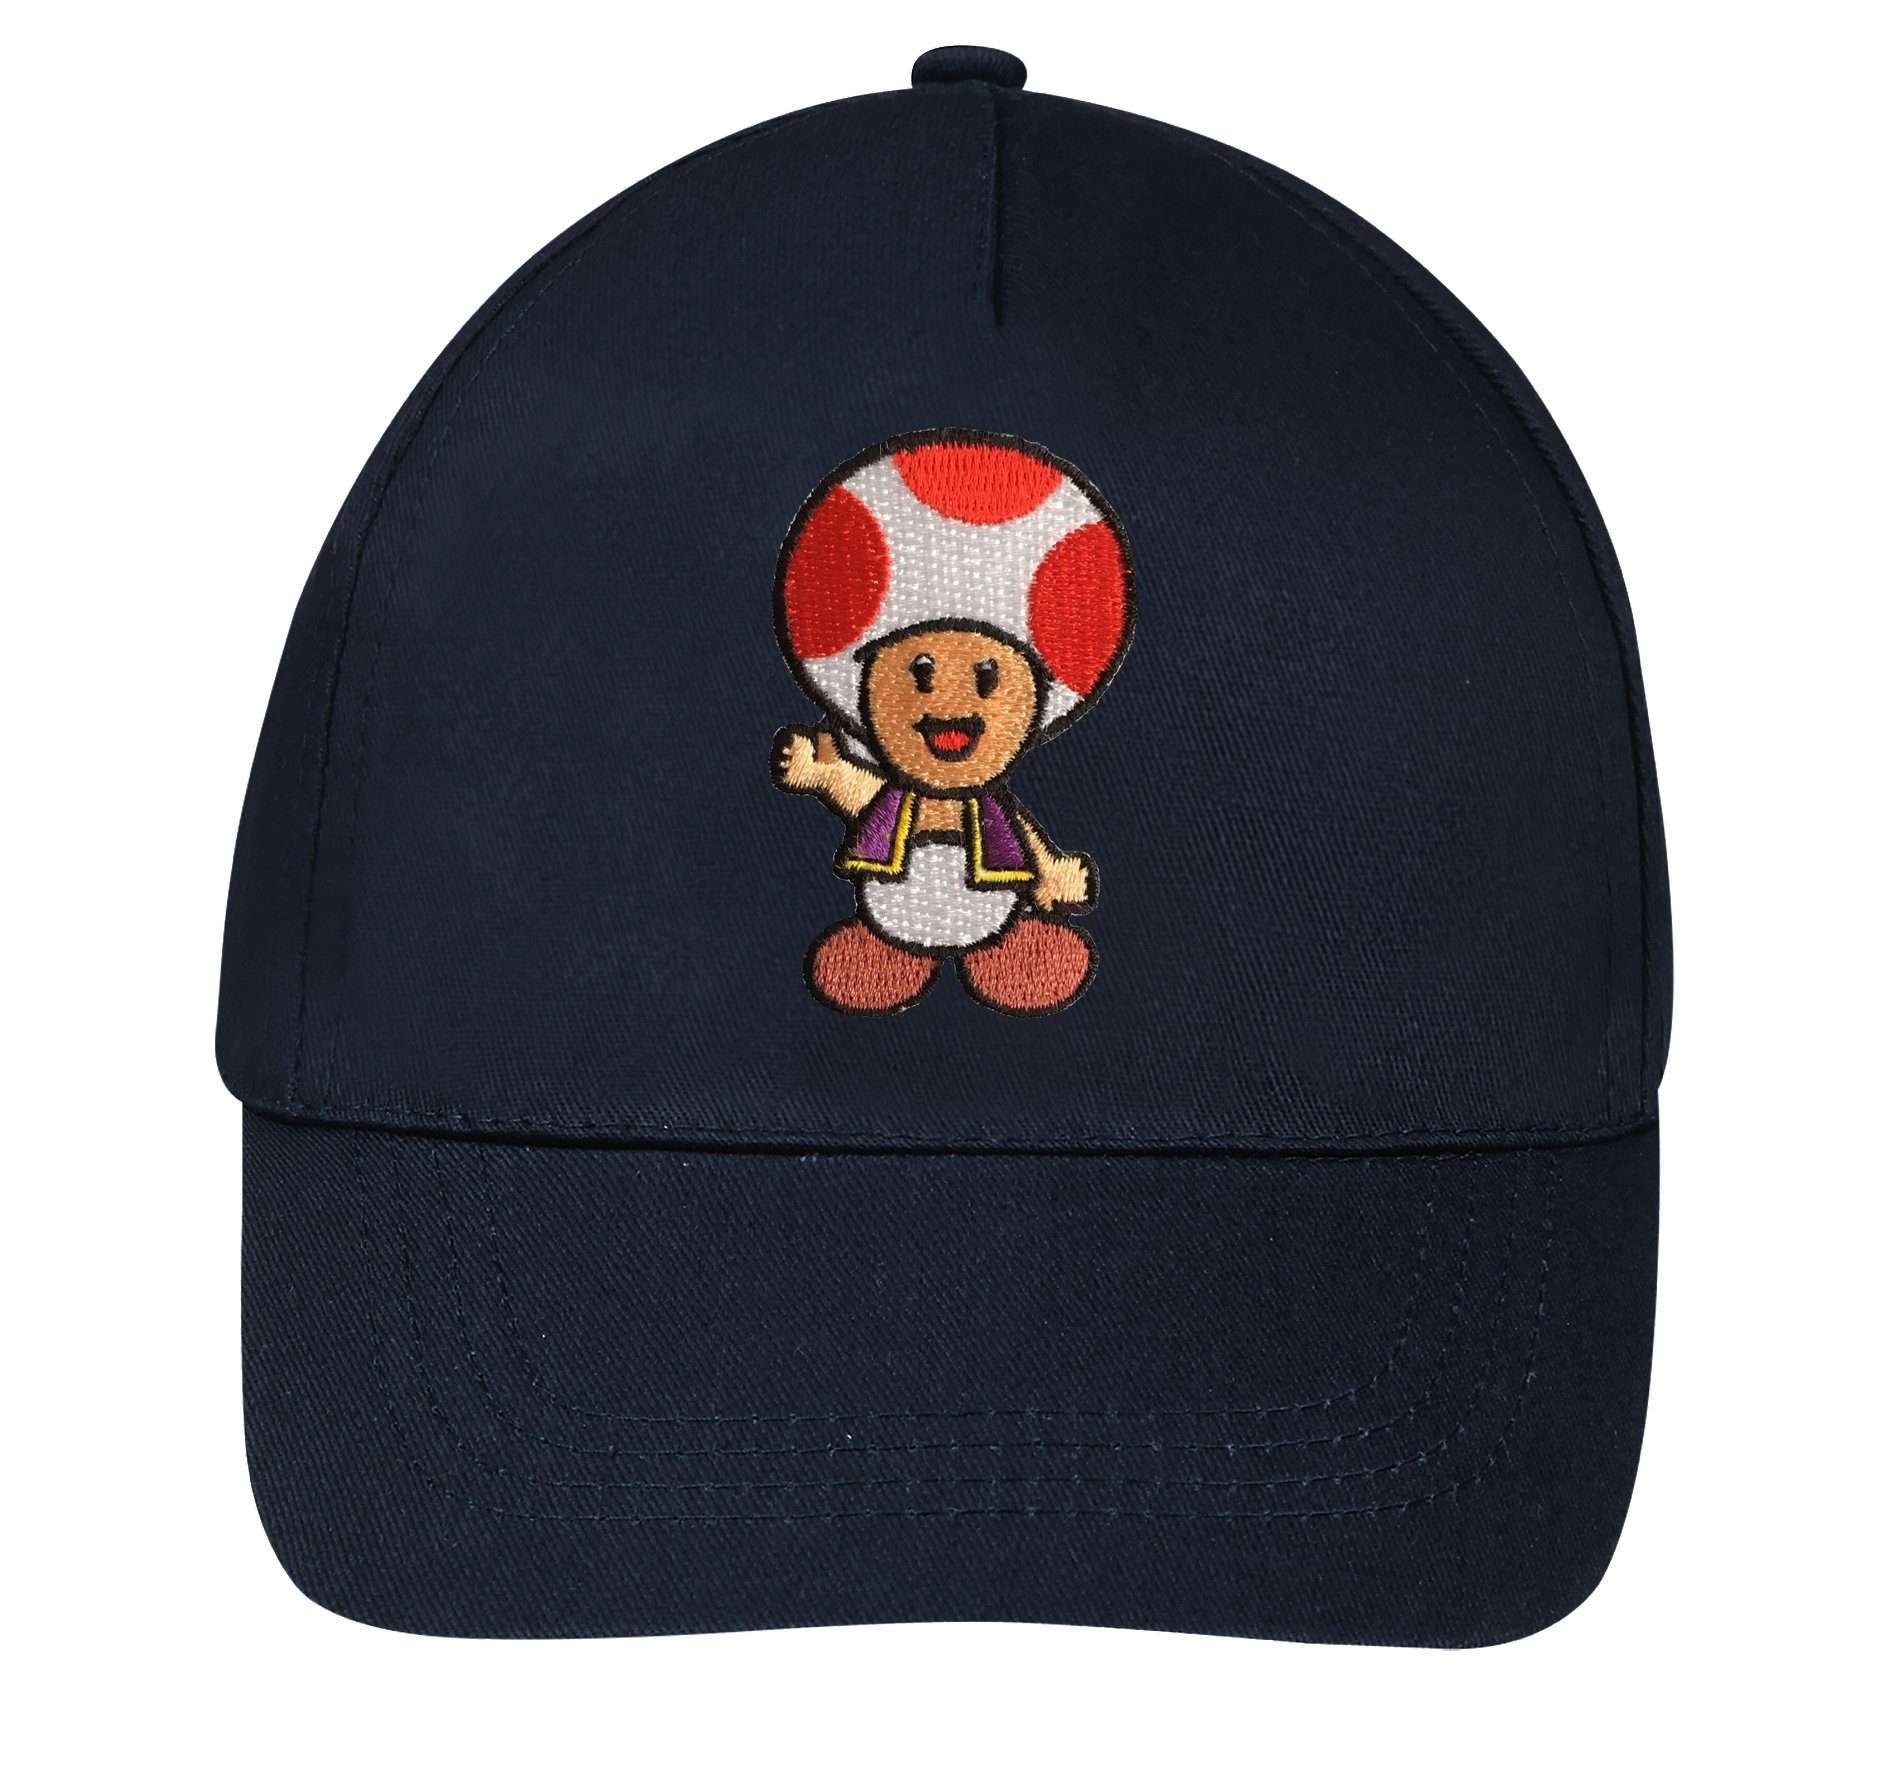 [Super beliebte Artikelnummer! ] Youth Designz Baseball Cap modischer Stickerei Cap Logo Toad Kinder mit Navyblau